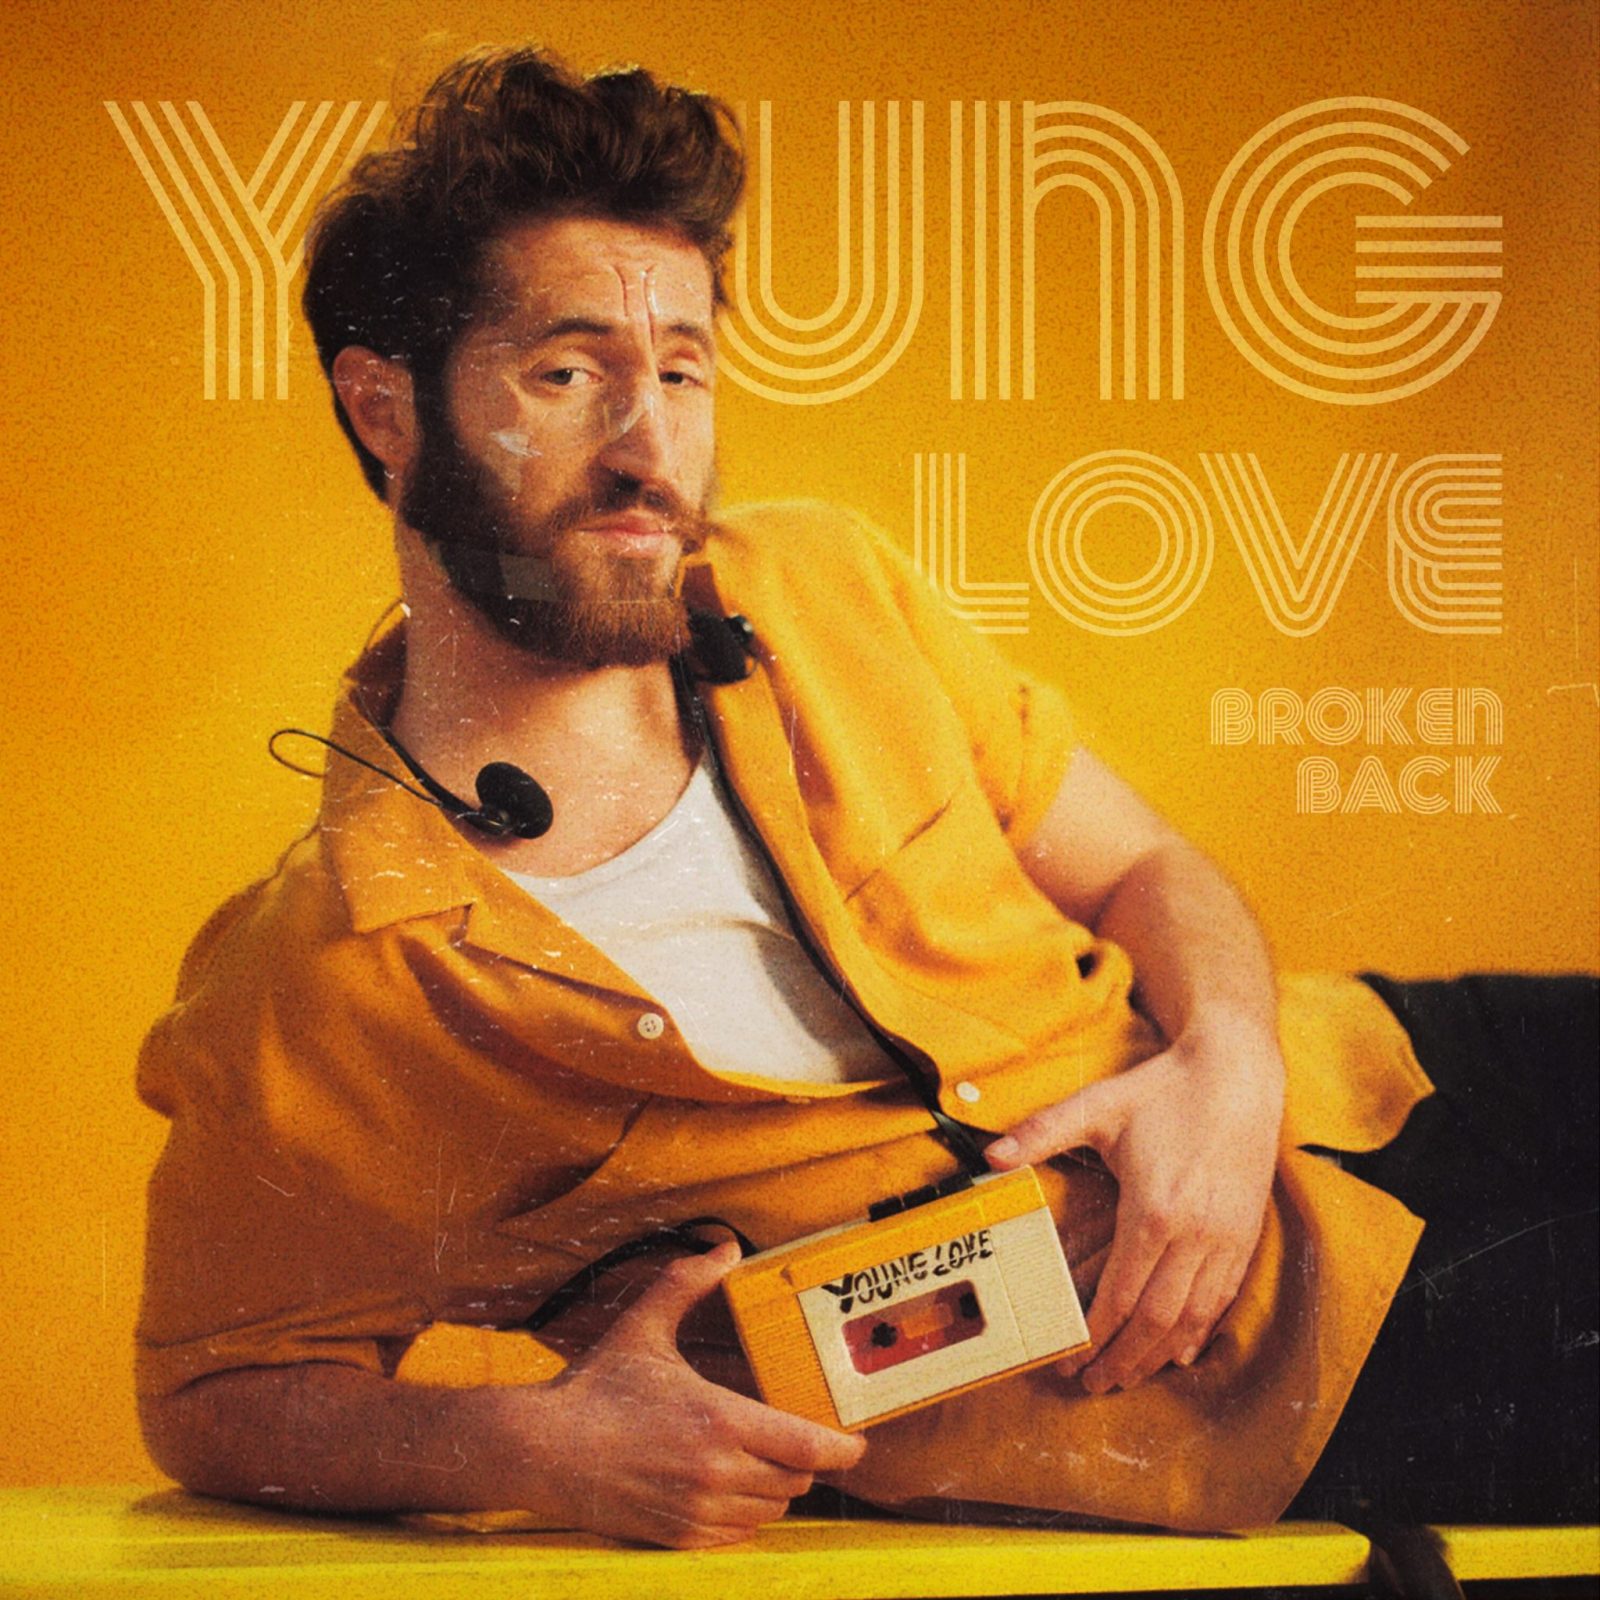 BROKEN BACK - Young Love